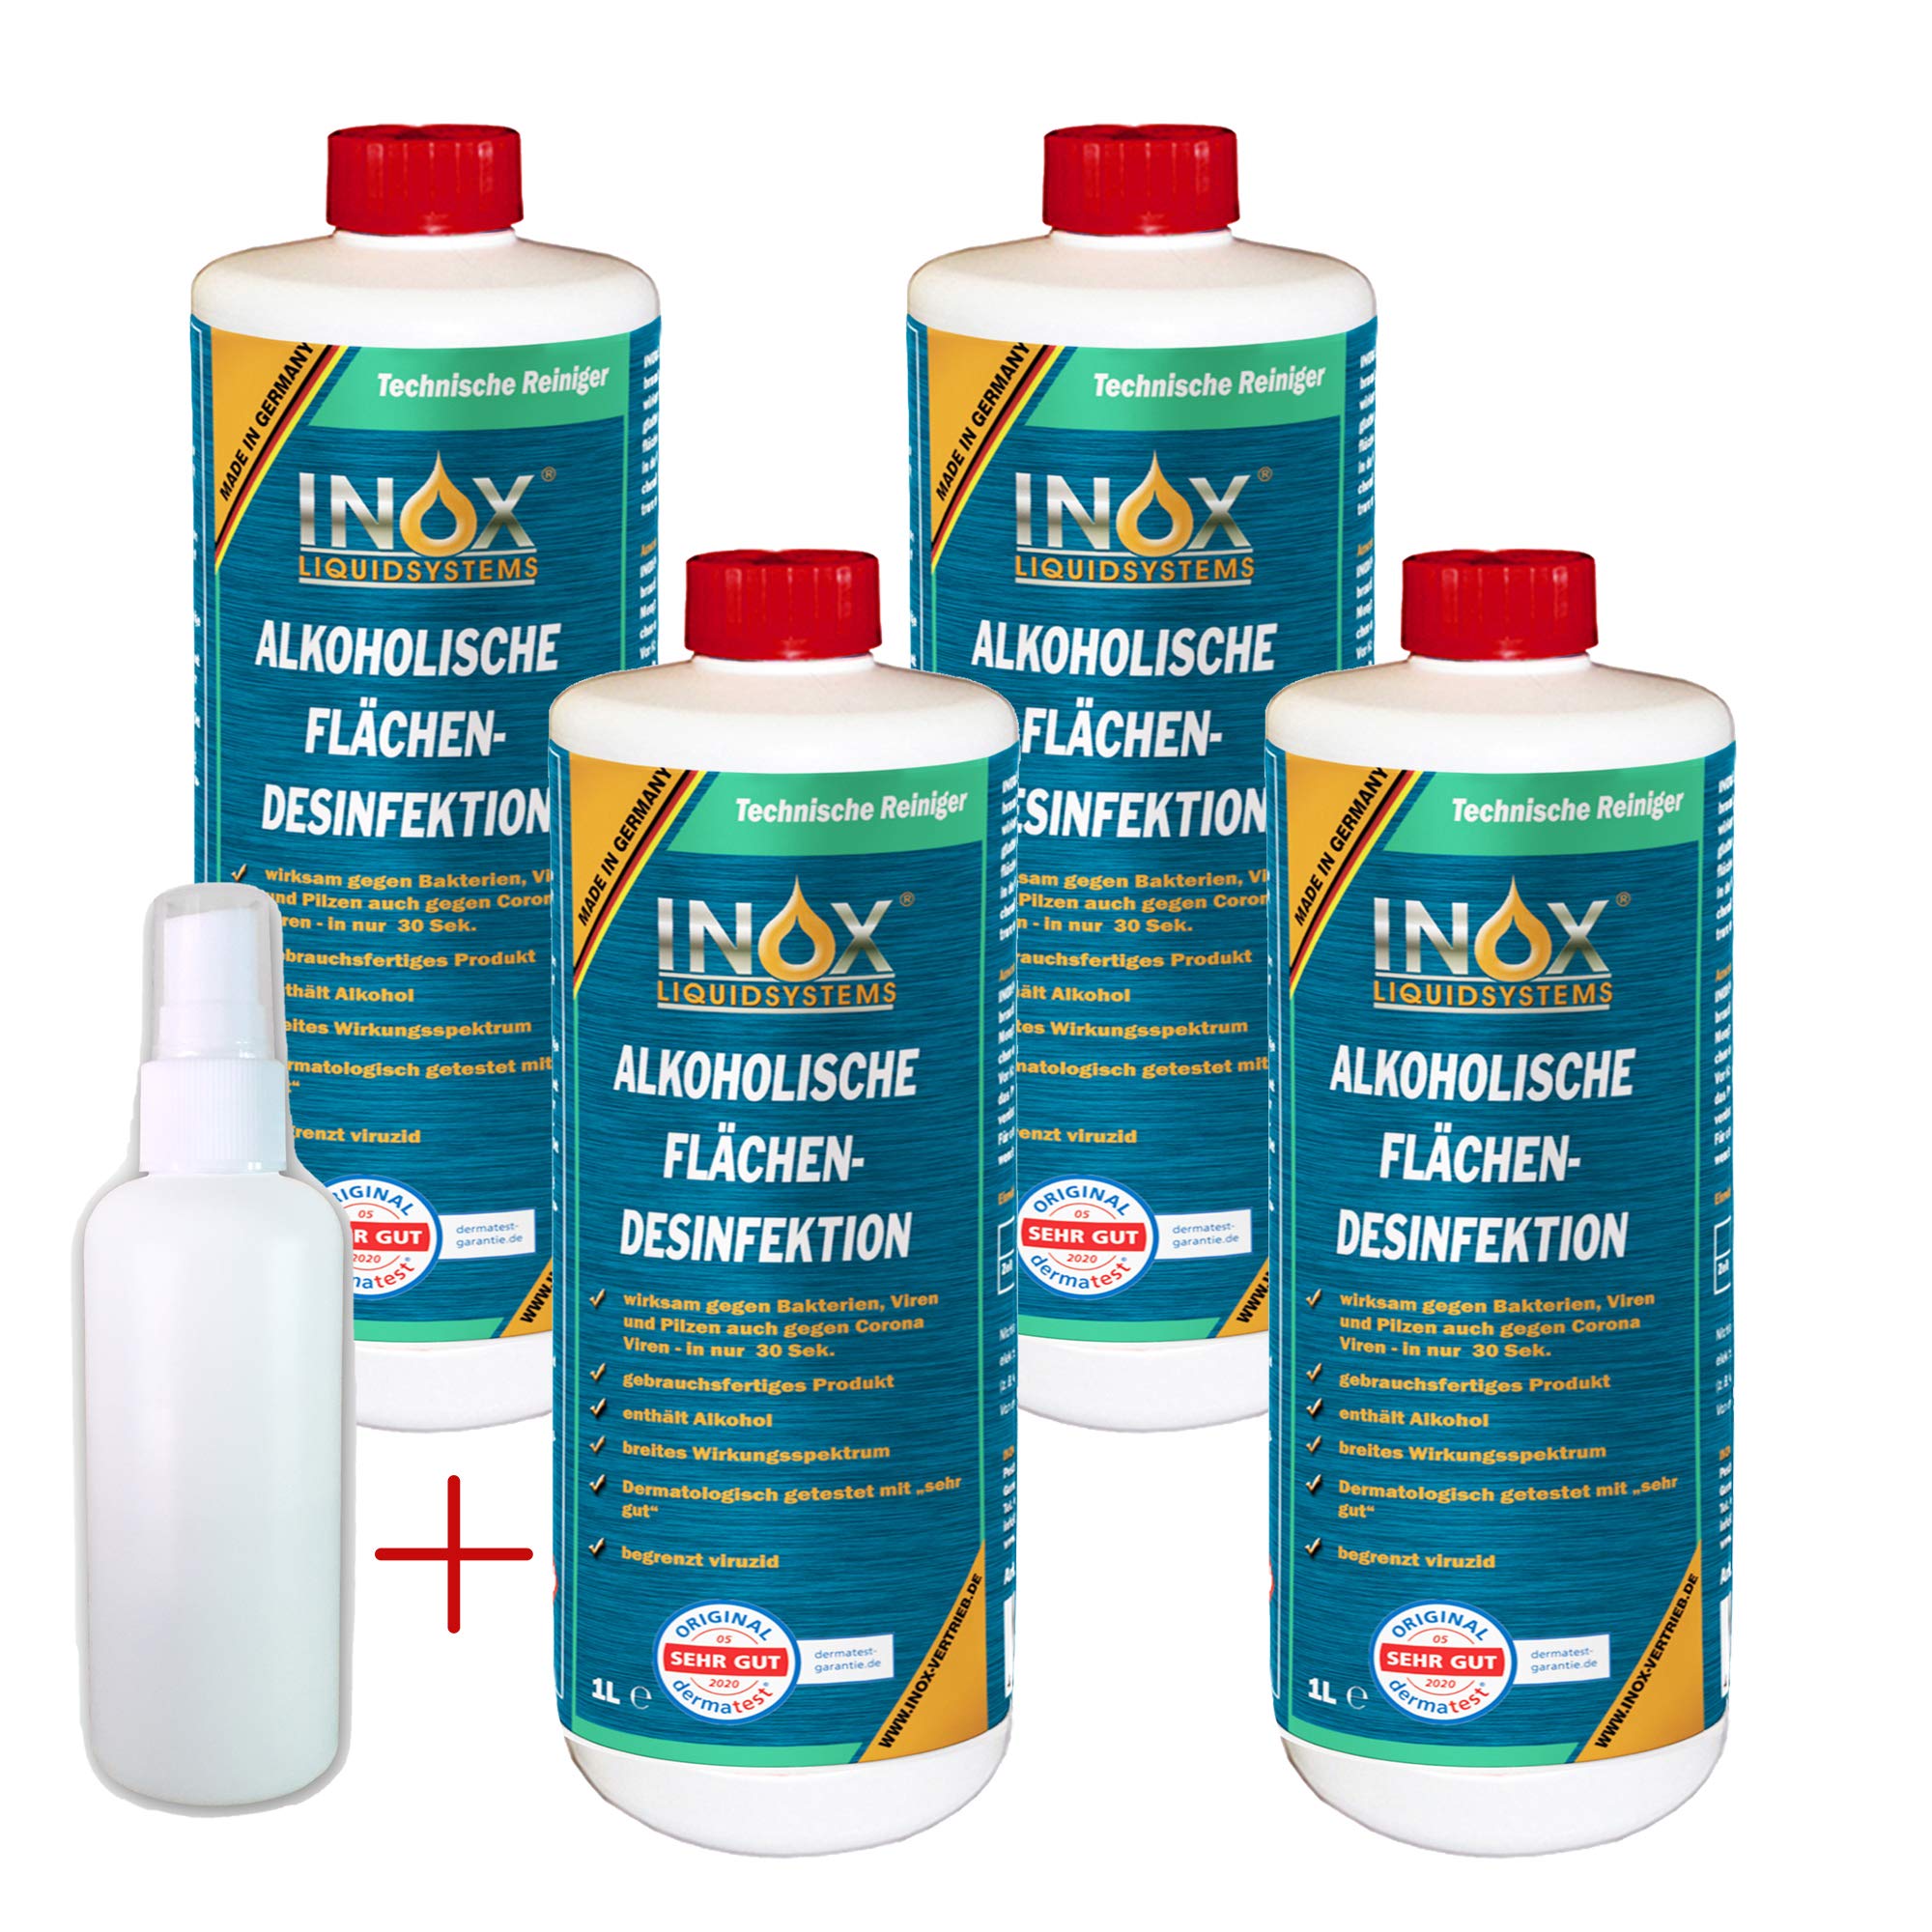 INOX® alkoholisches Flächendesinfektionsmittel 4 x 1L - Hochwirksame Flächendesinfektion mit Alkohol - Ideales Desinfektionsmittel für alle glatten Oberflächen